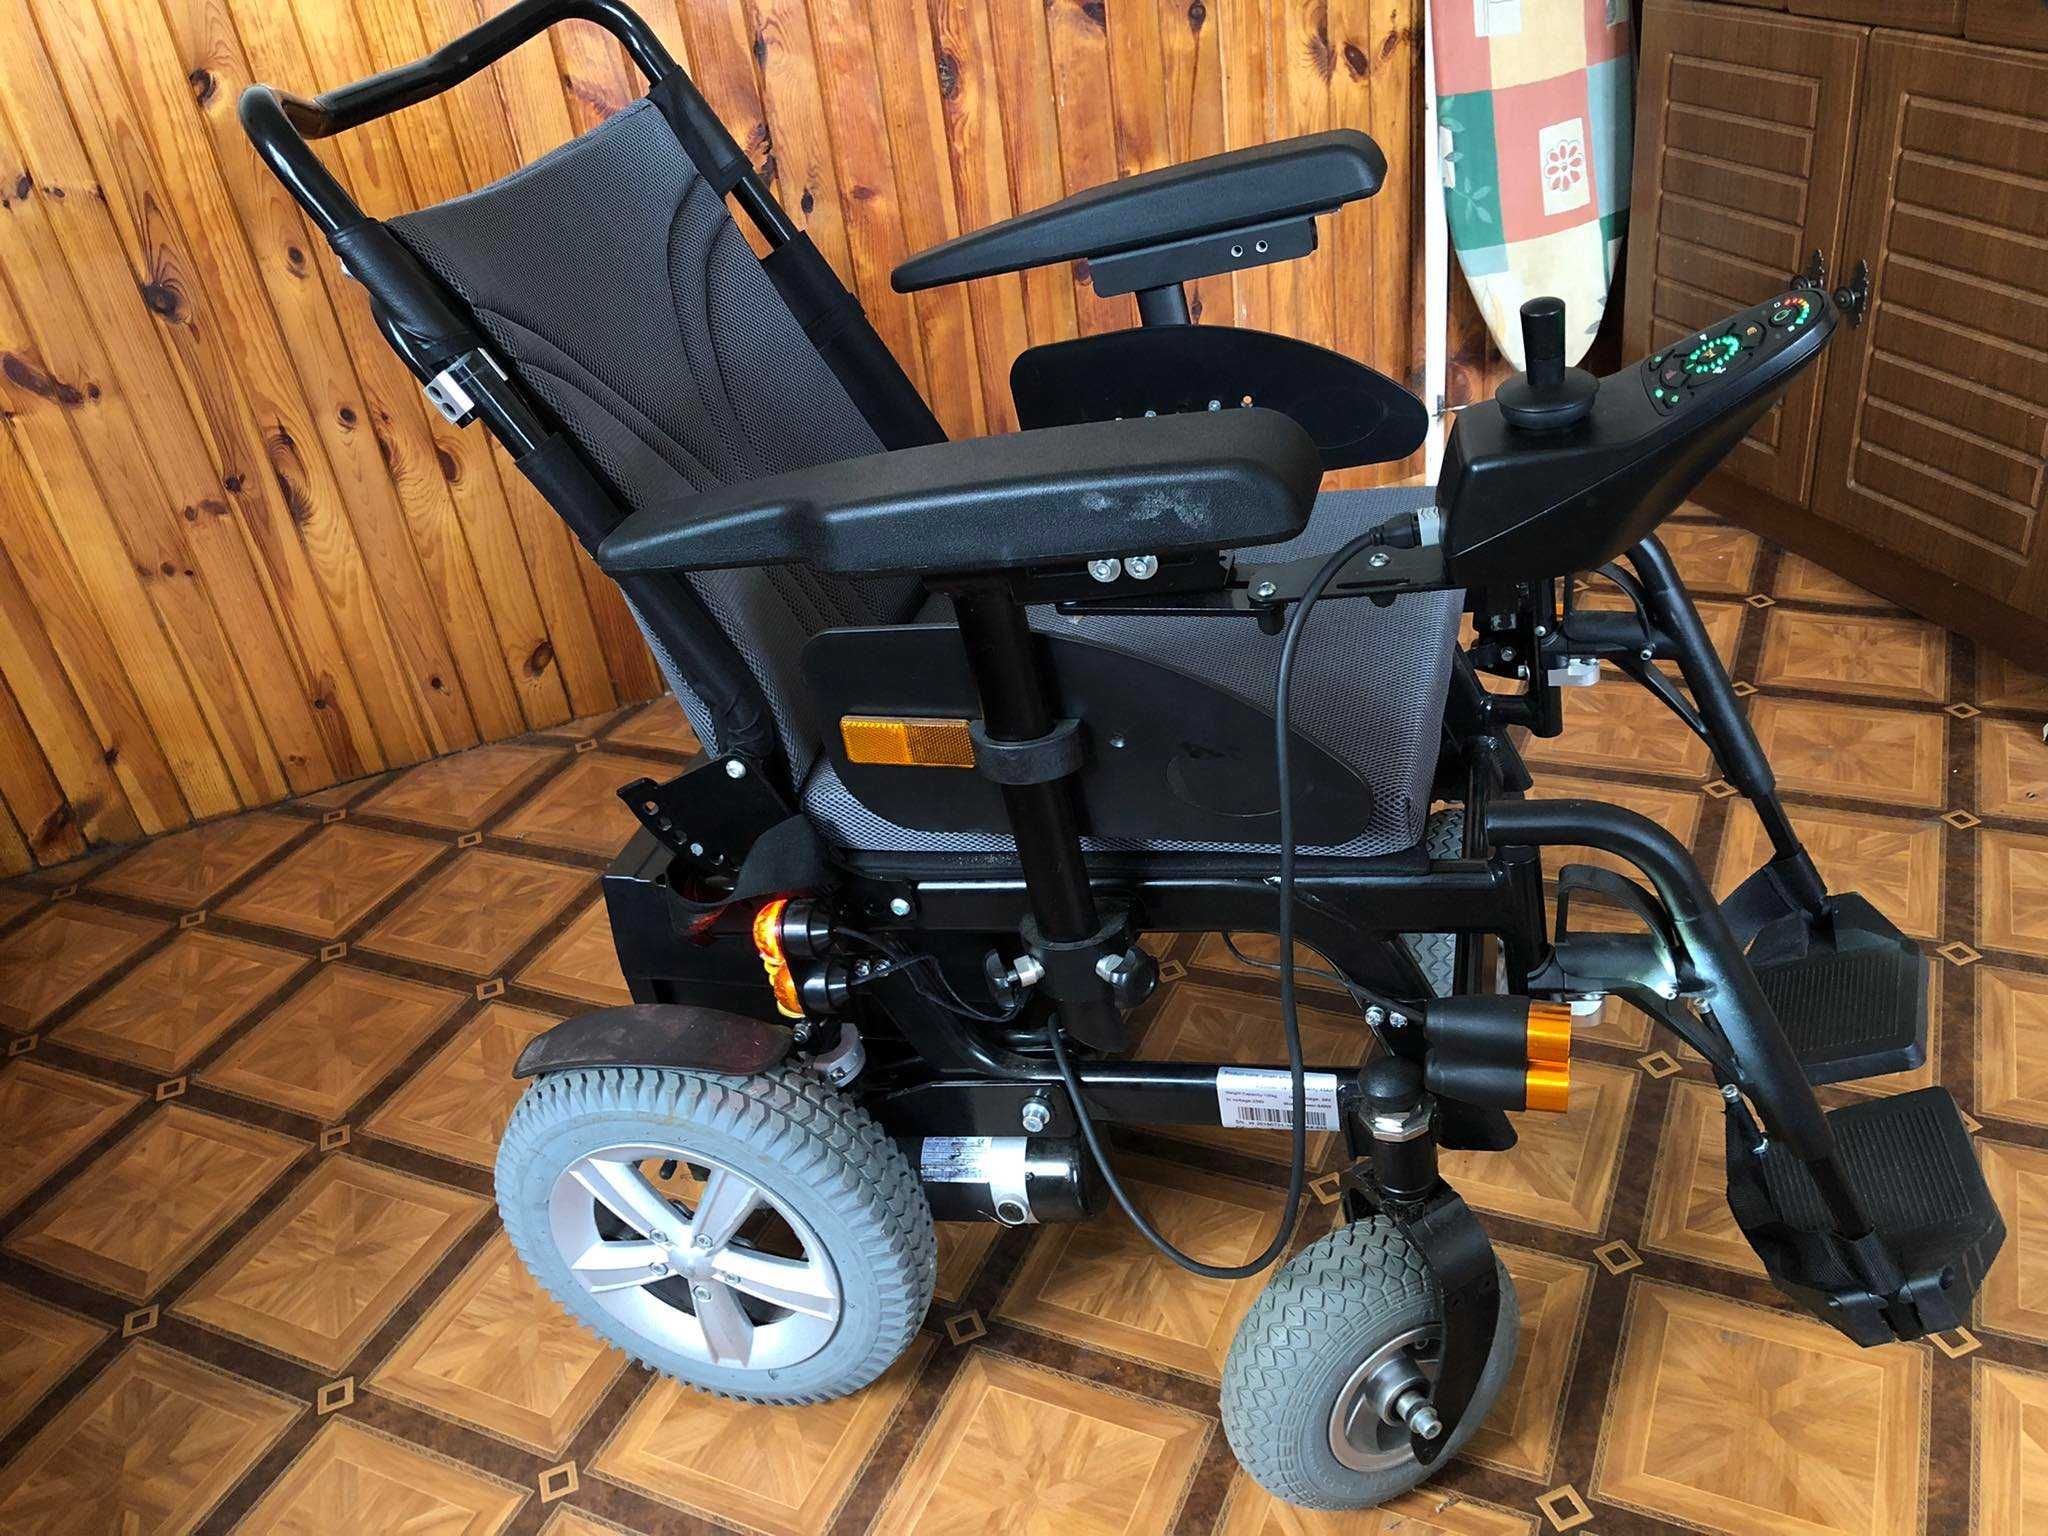 Profesjonalny wózek inwalidzki Limber - używany sporadycznie